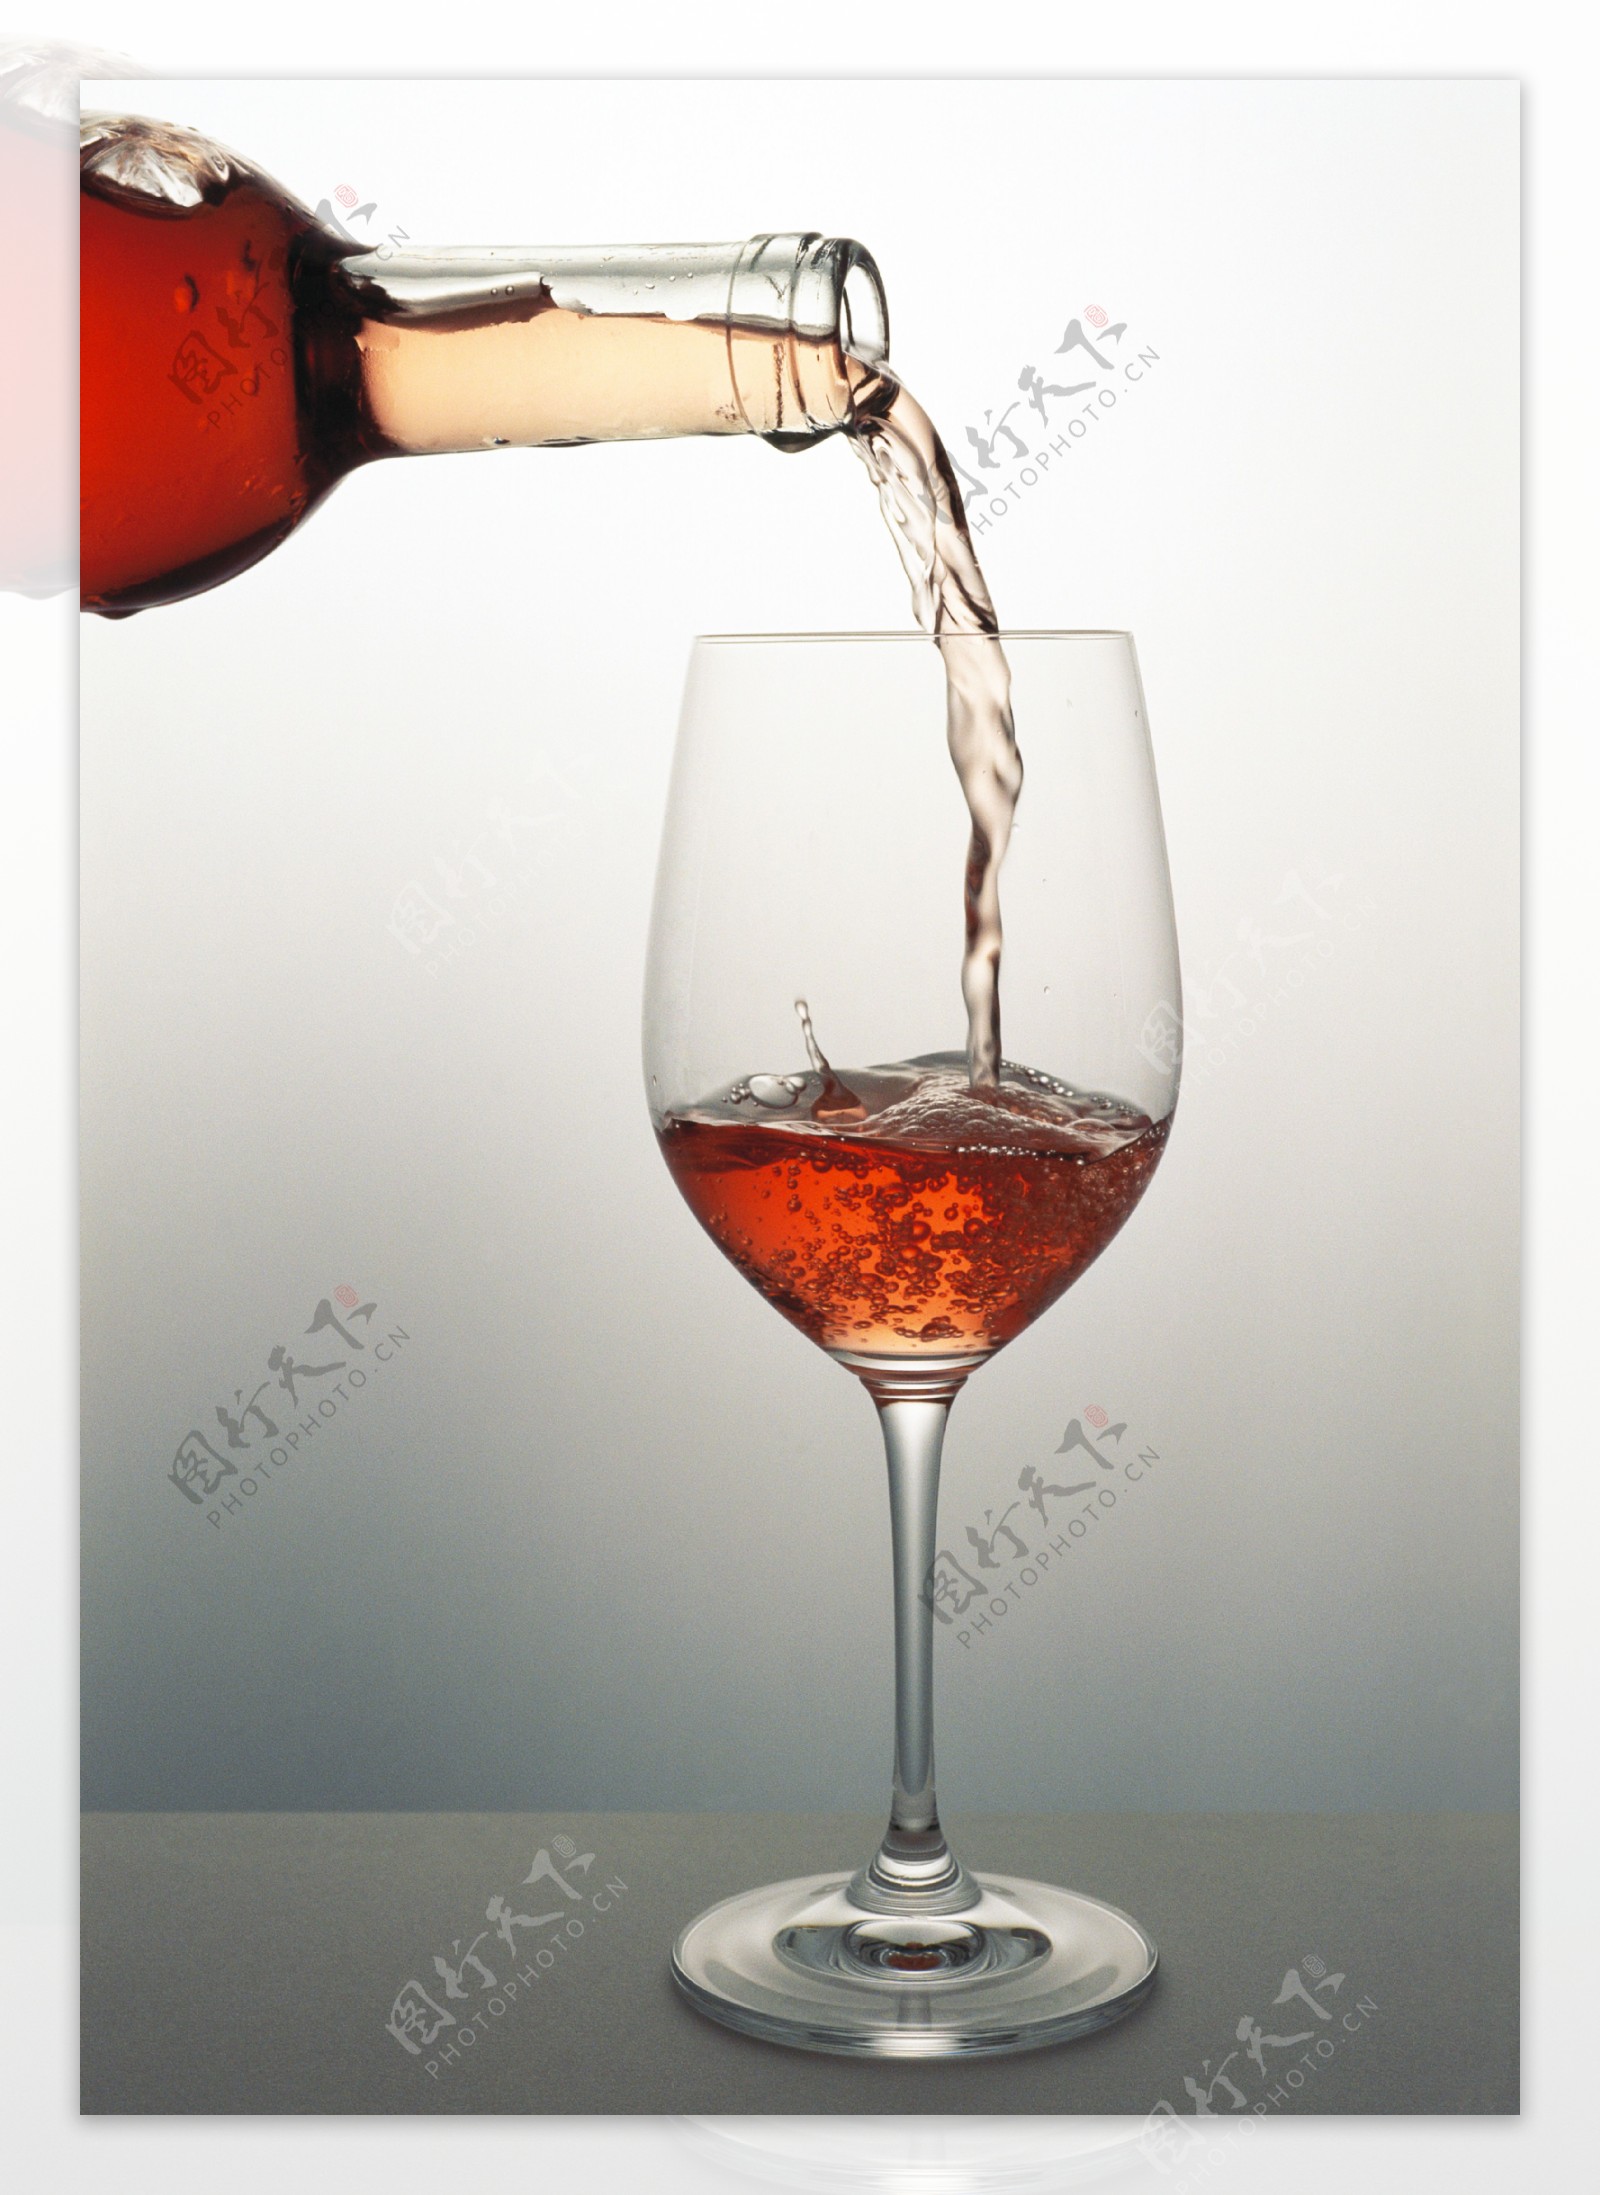 往杯里倒红酒时摄影图片